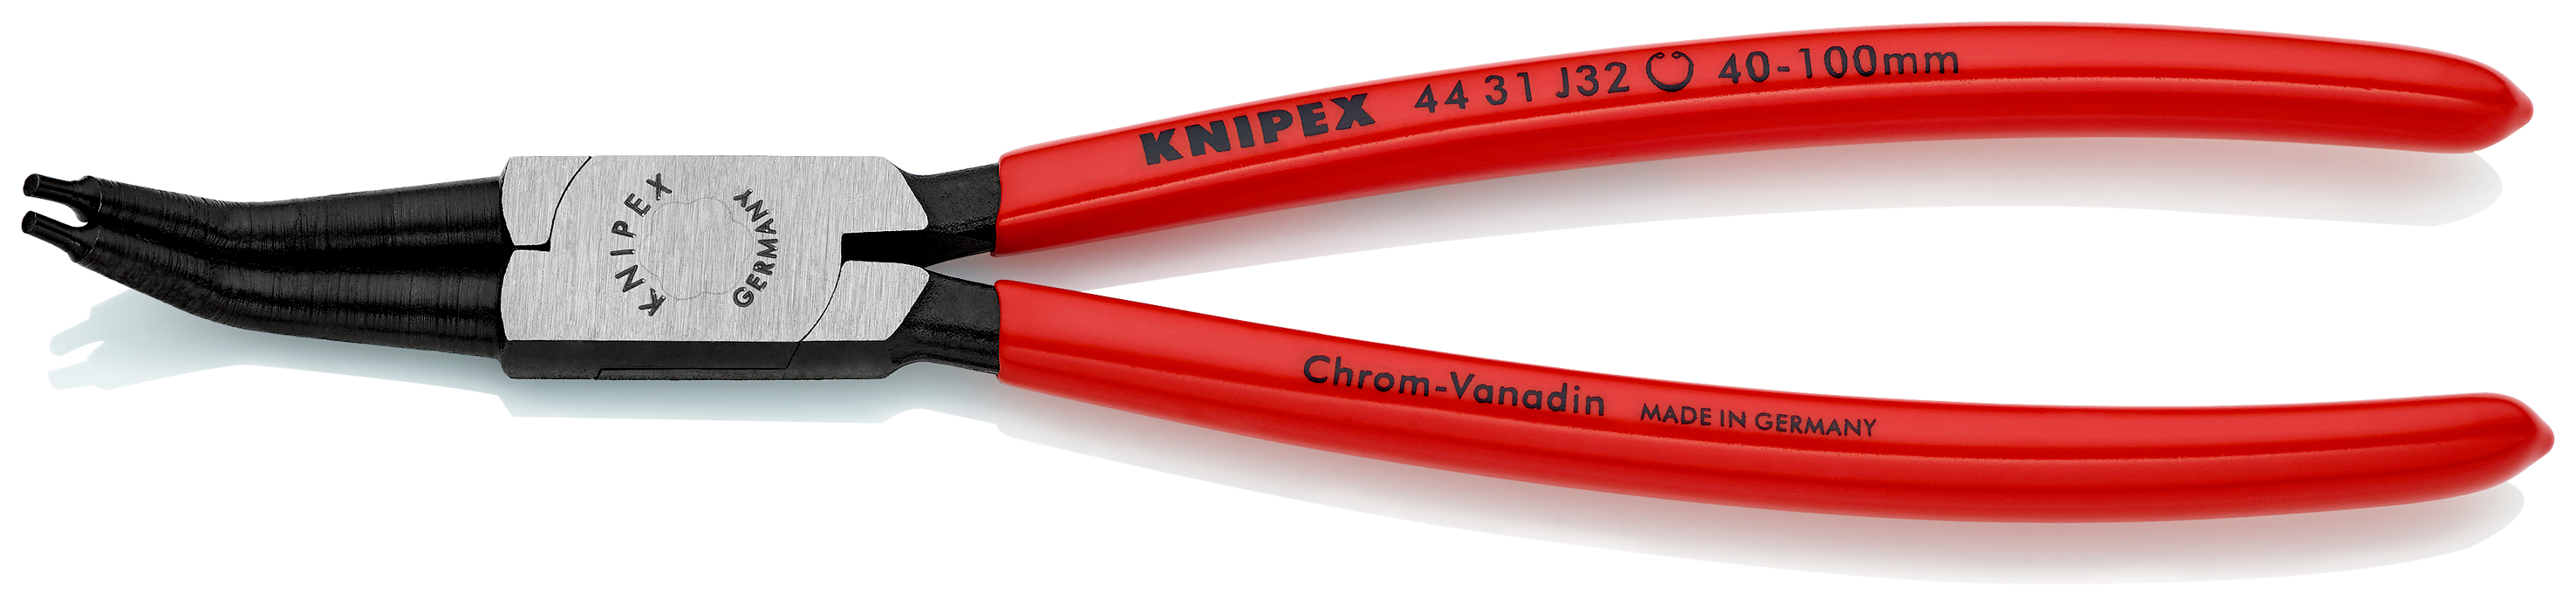 Knipex 4431J32 Cleste pentru inele de siguranță de interior angular la 45°, lungime 225 mm